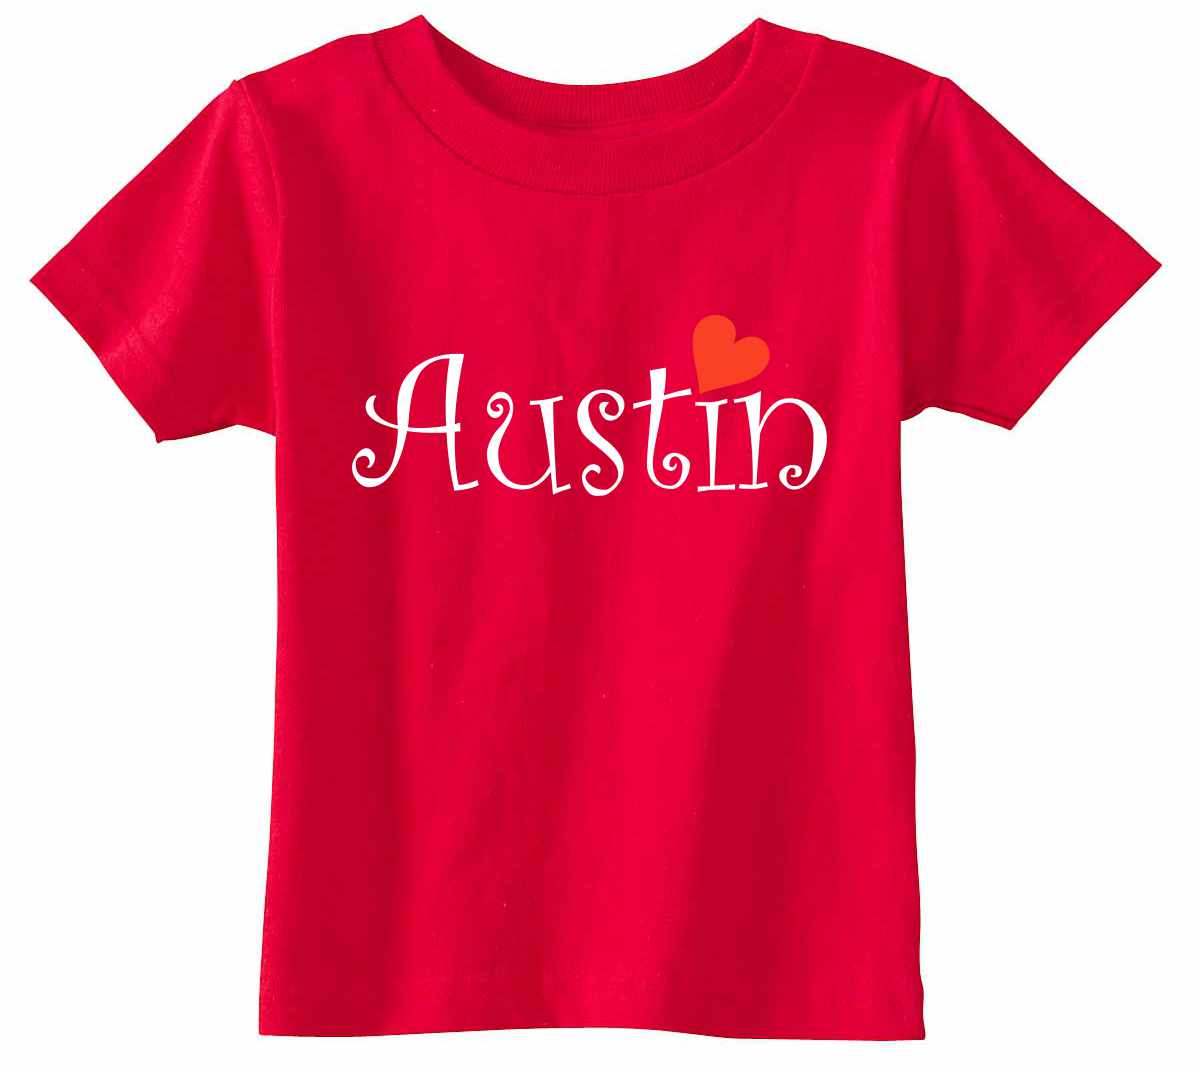 Austin City on Infant-Toddler T-Shirt (#1338-7)